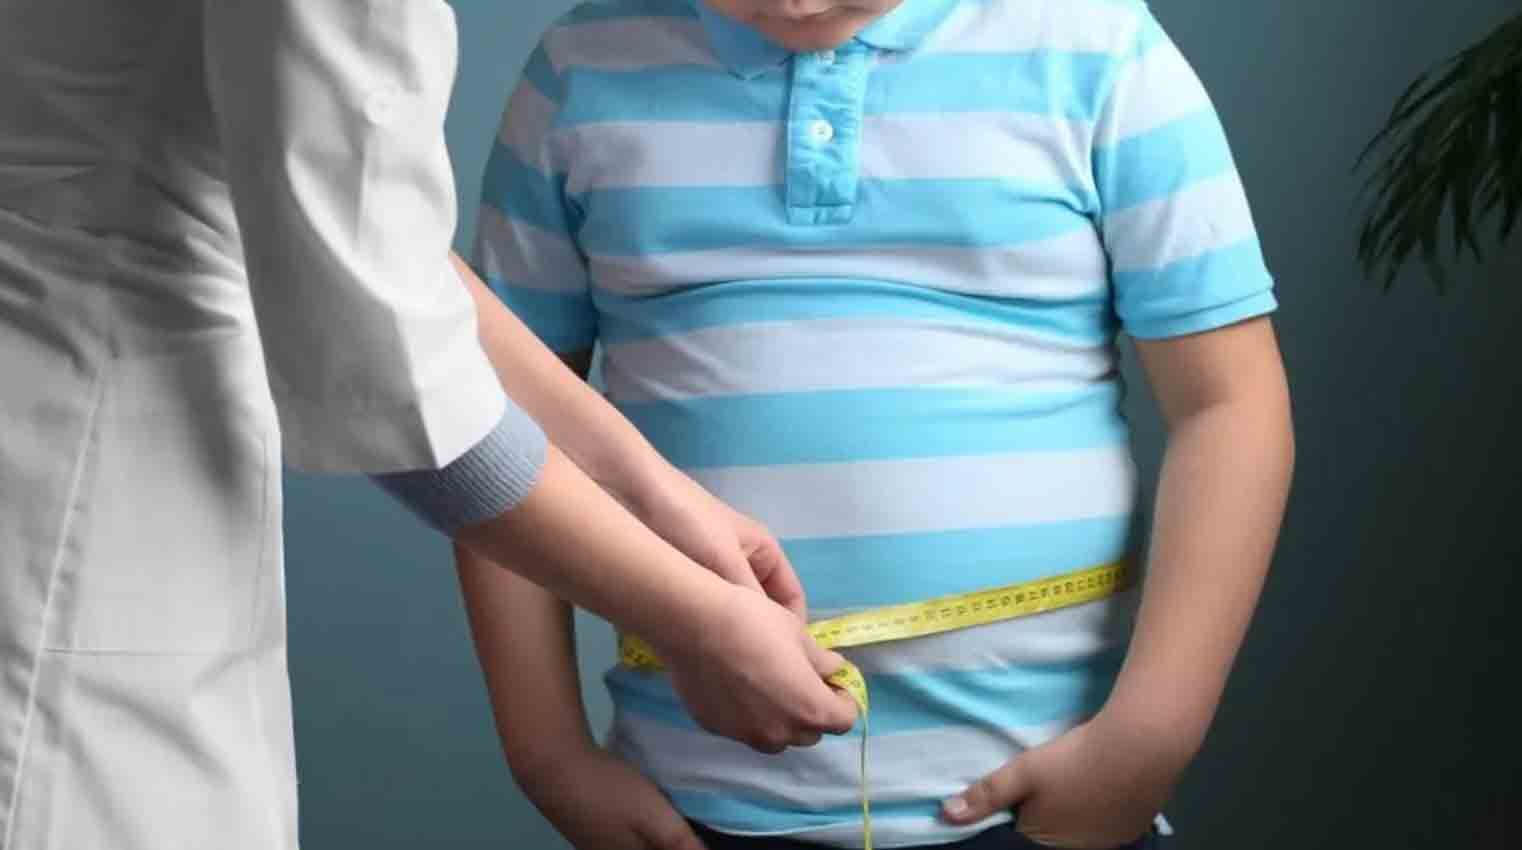 Obesidad infantil: 15% de menores de 6 años presentan la enfermedad en el Biobío